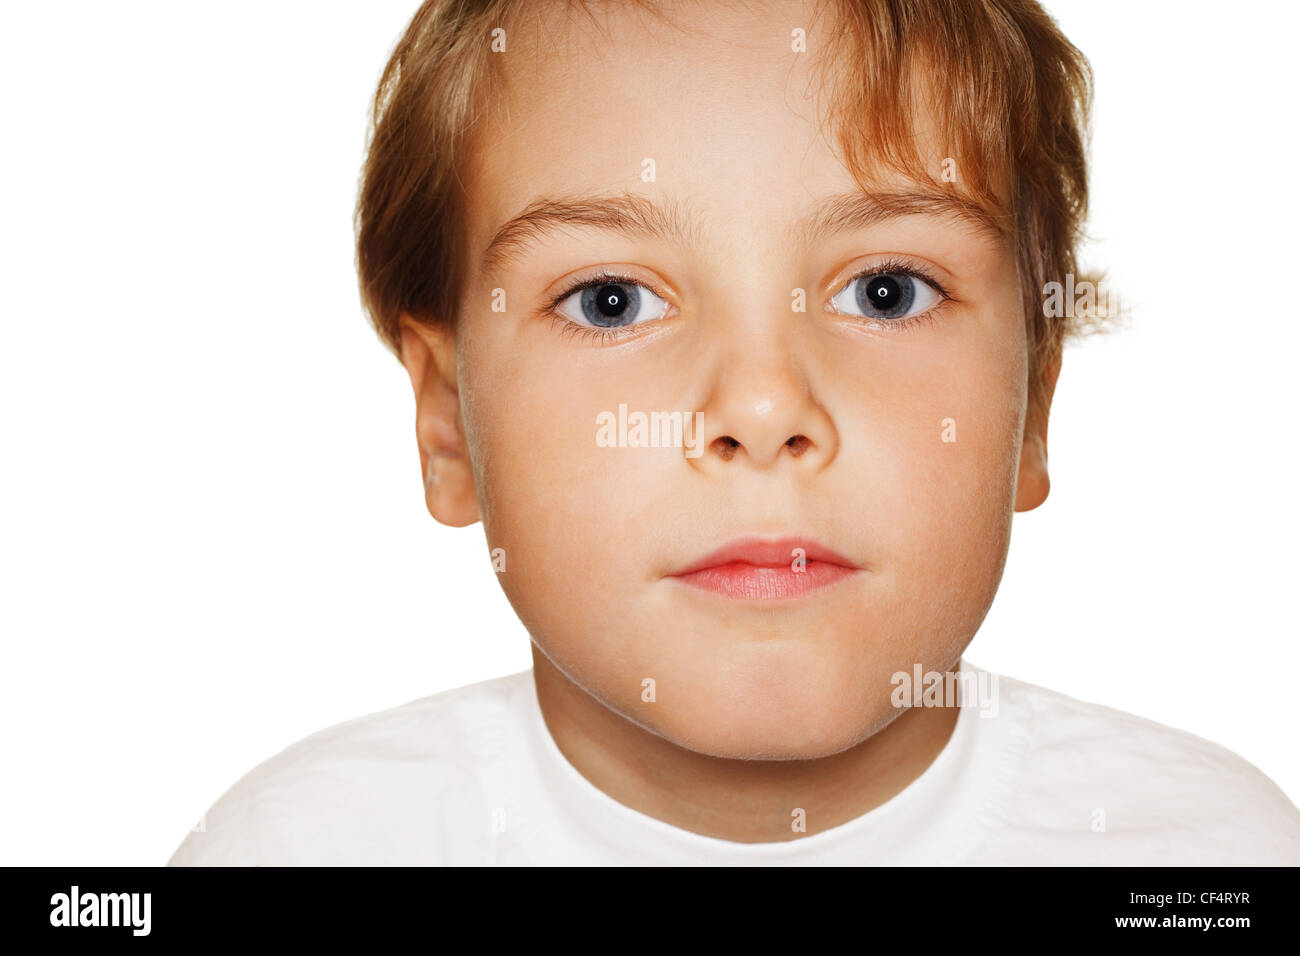 Porträt Kleinkind in einem weißen T-shirt Fotostudio, Kopf nach oben. Ringblitz Stockfoto